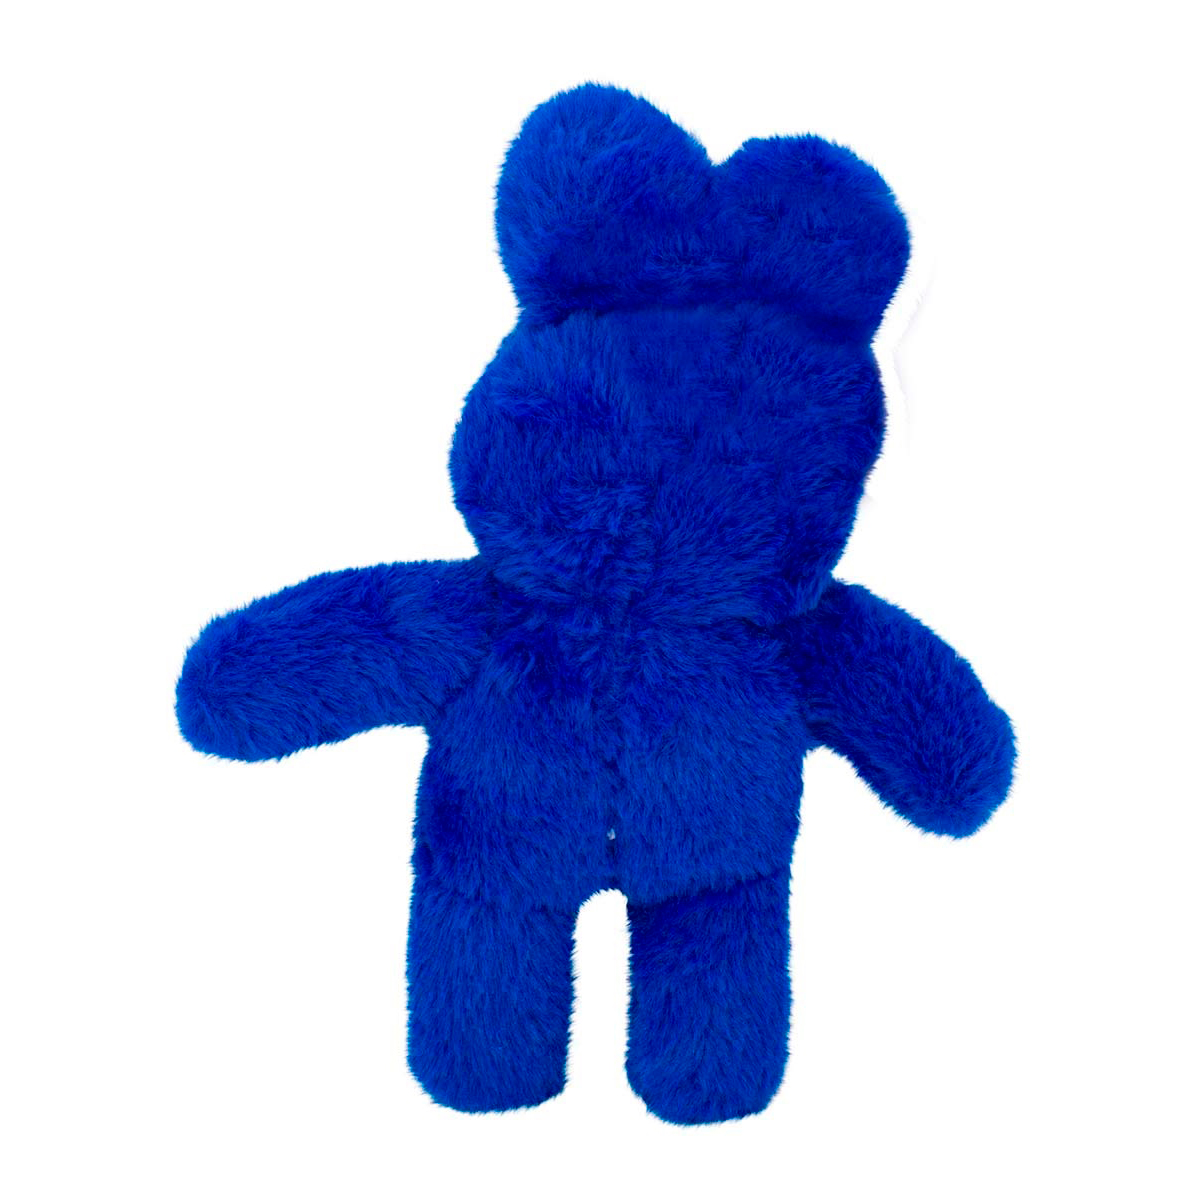 Мягкая игрушка Михи-Михи huggy Wuggy Мистер Хоппс синяя 30см - фото 2